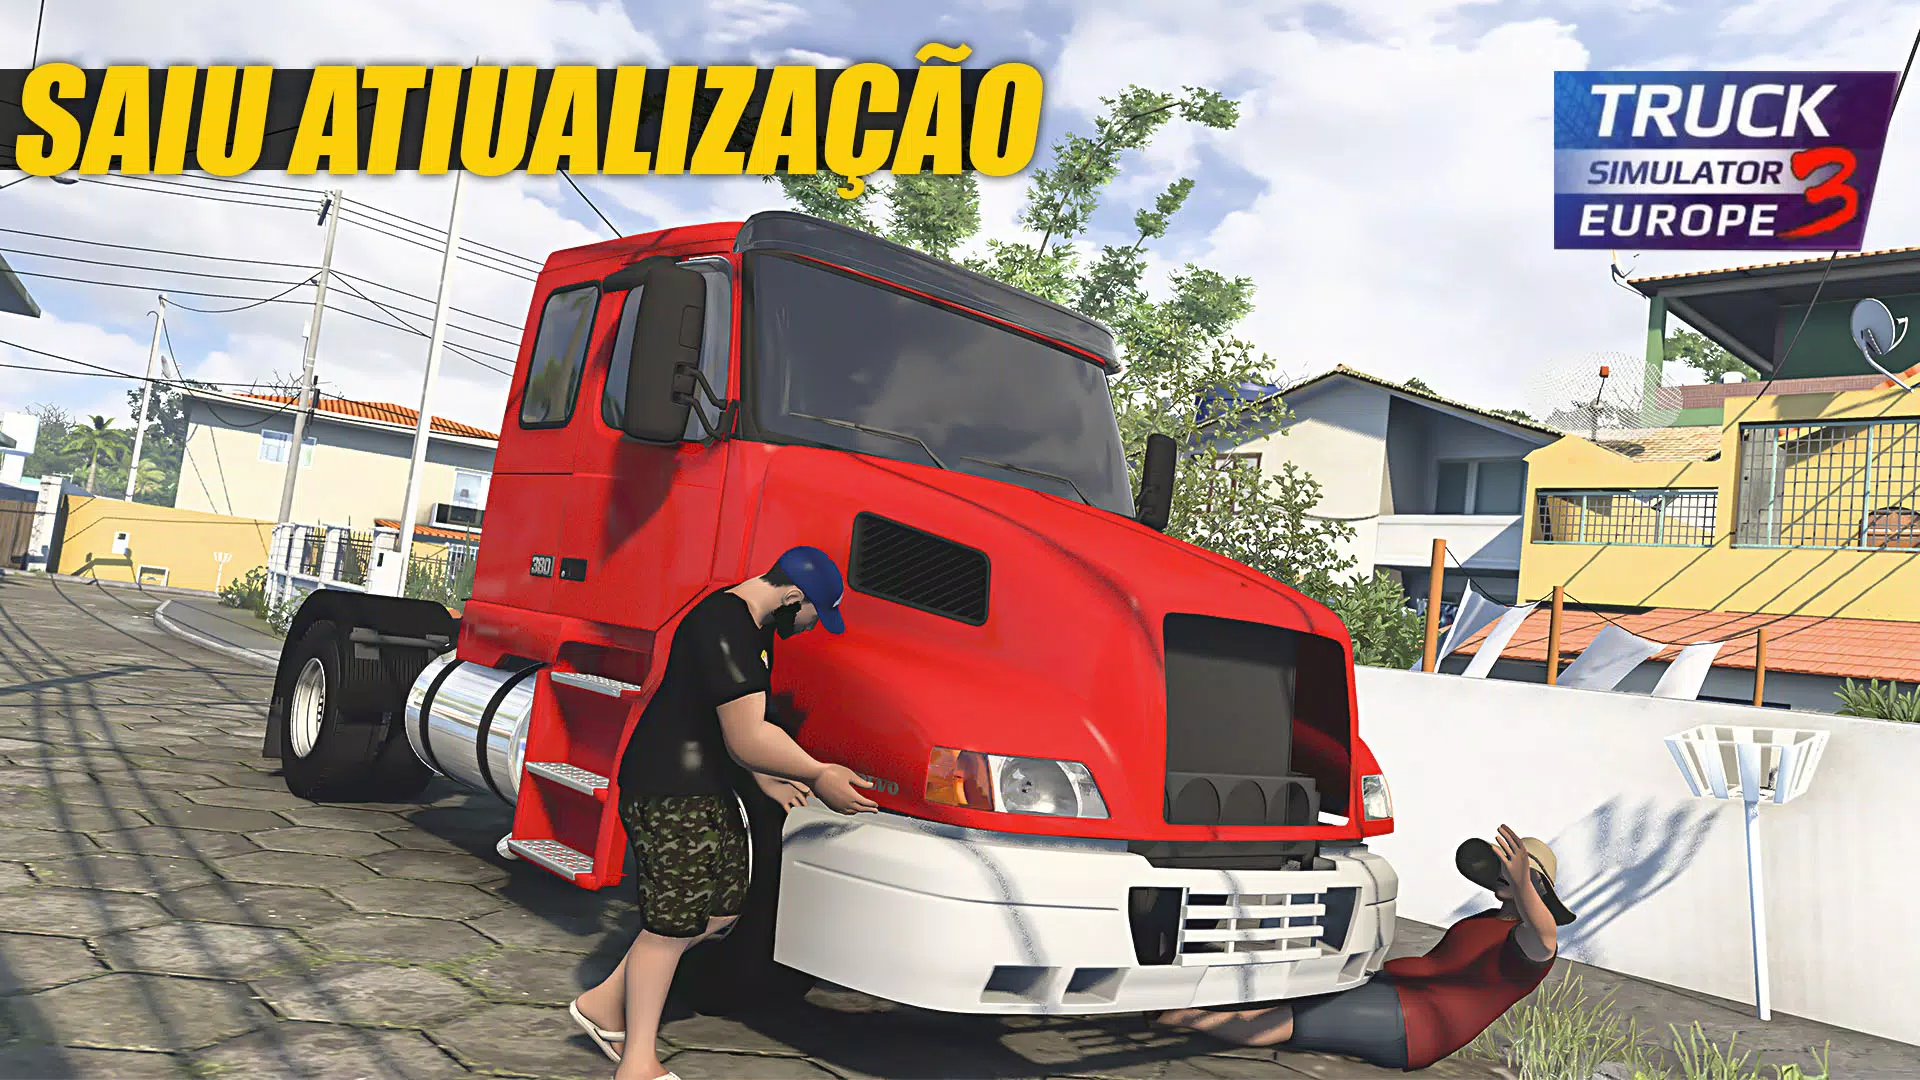 Jogo De Caminhão Brasileiro APK for Android Download